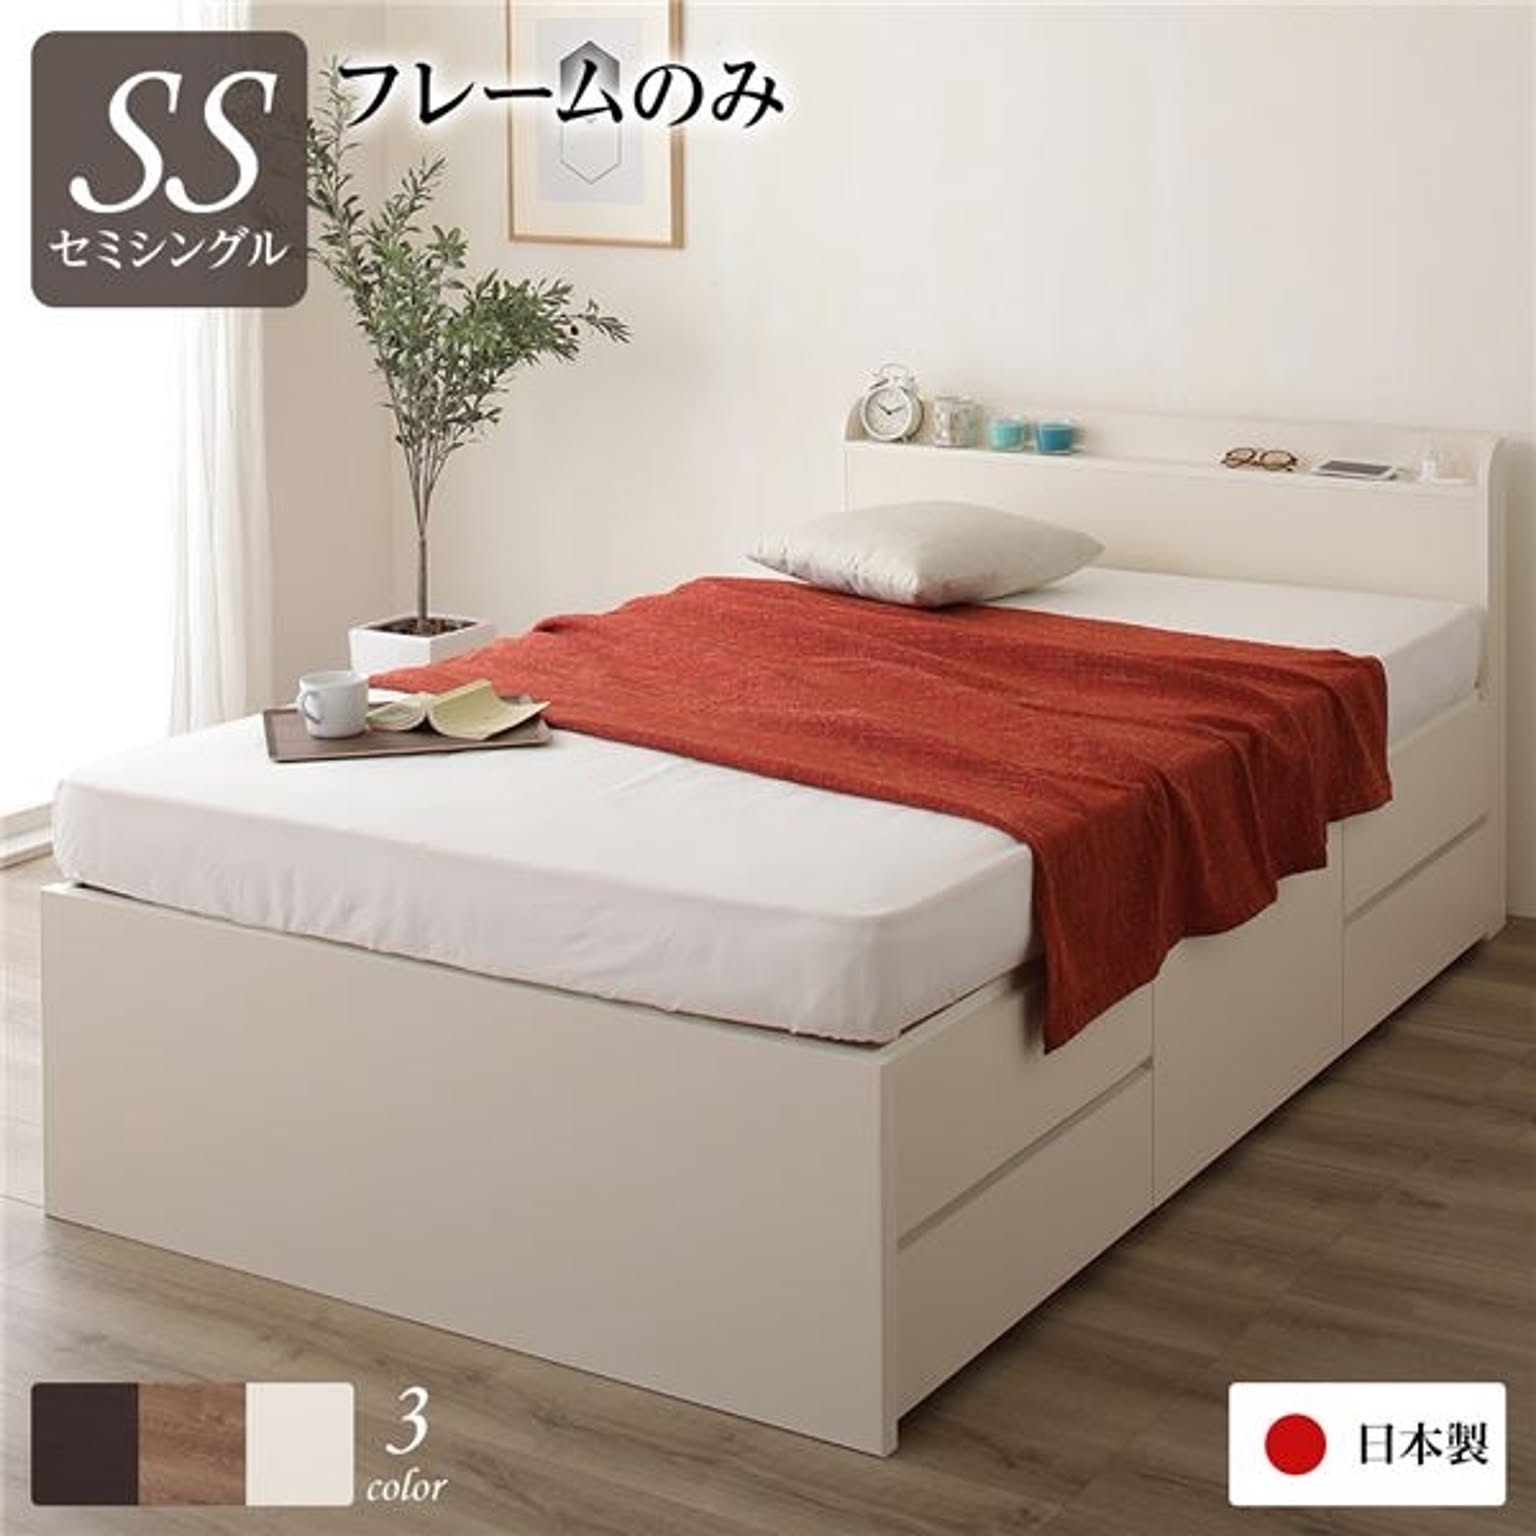 日本製 セミシングルベッド チェストベッド フレームのみ アイボリー 薄型 宮付き 引き出し収納 収納ベッド